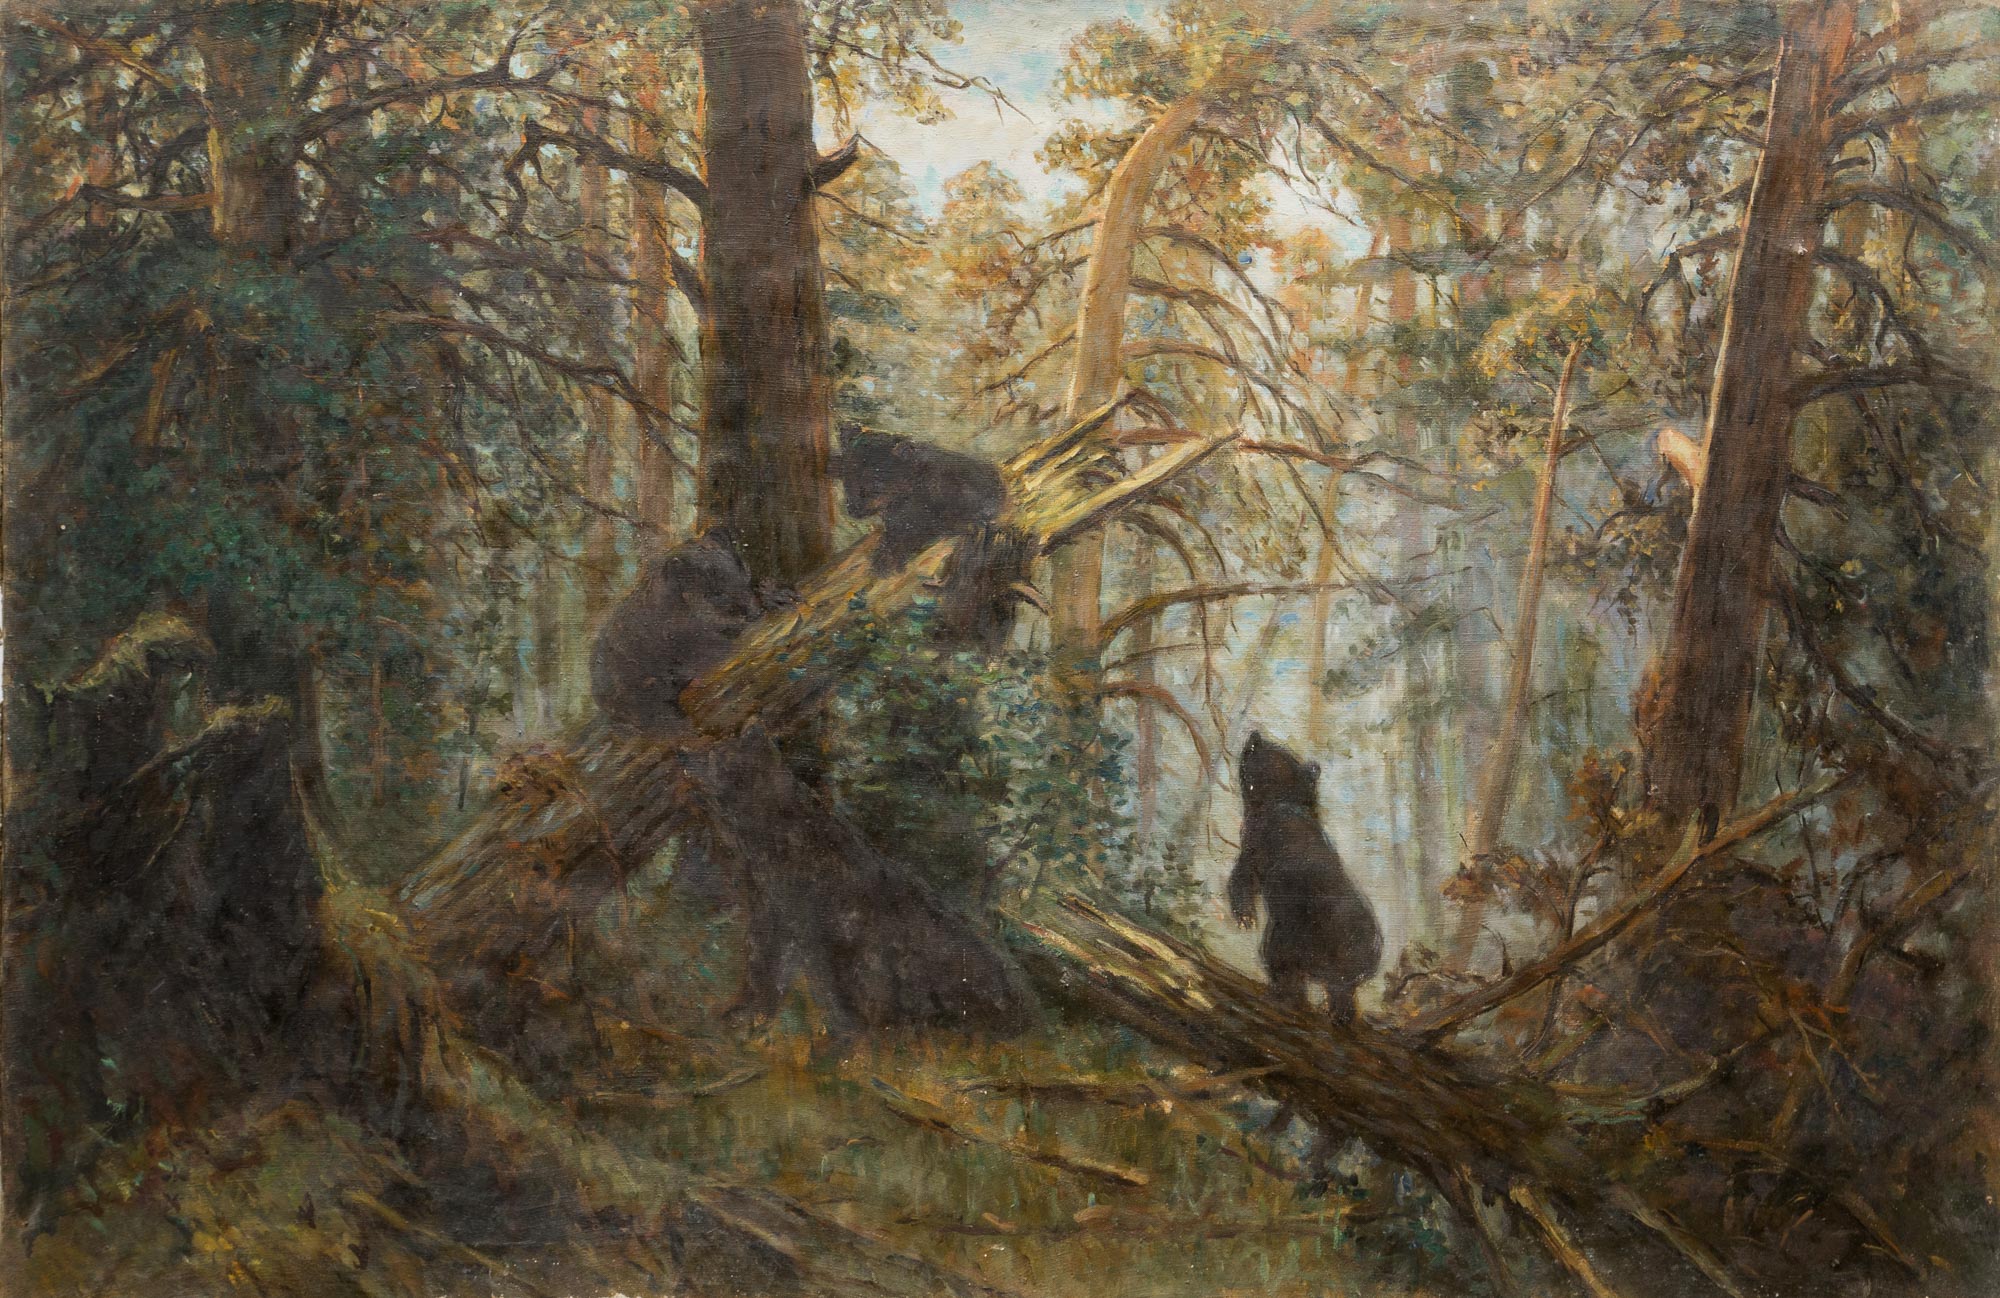 Копия с картины И. Шишкина "Утро в сосновом лесу"